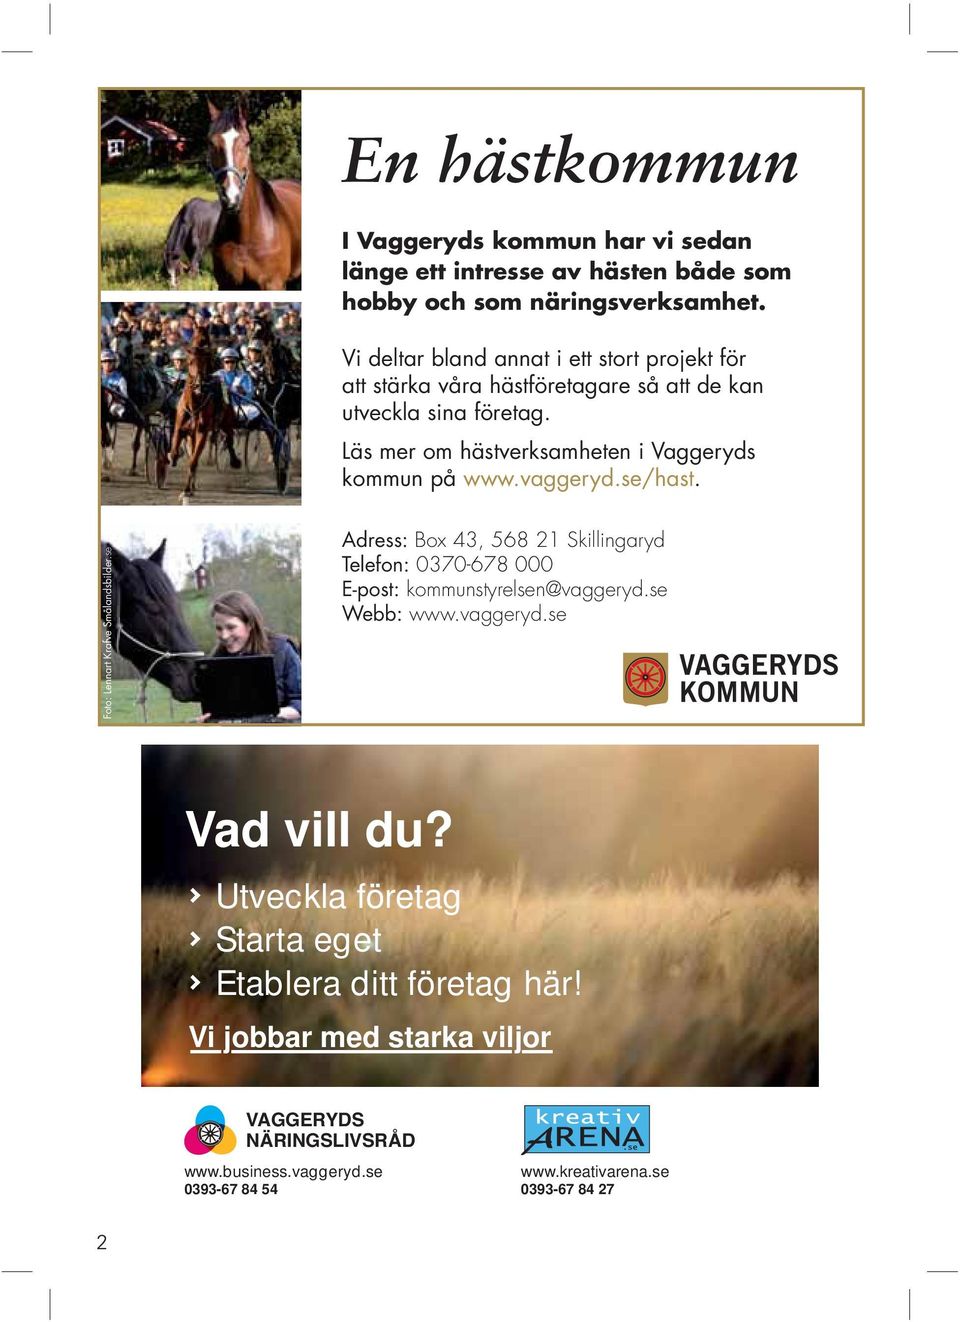 Läs mer om hästverksamheten i Vaggeryds kommun på www.vaggeryd.se/hast. Foto: Lennart Krafve Smålandsbilder.